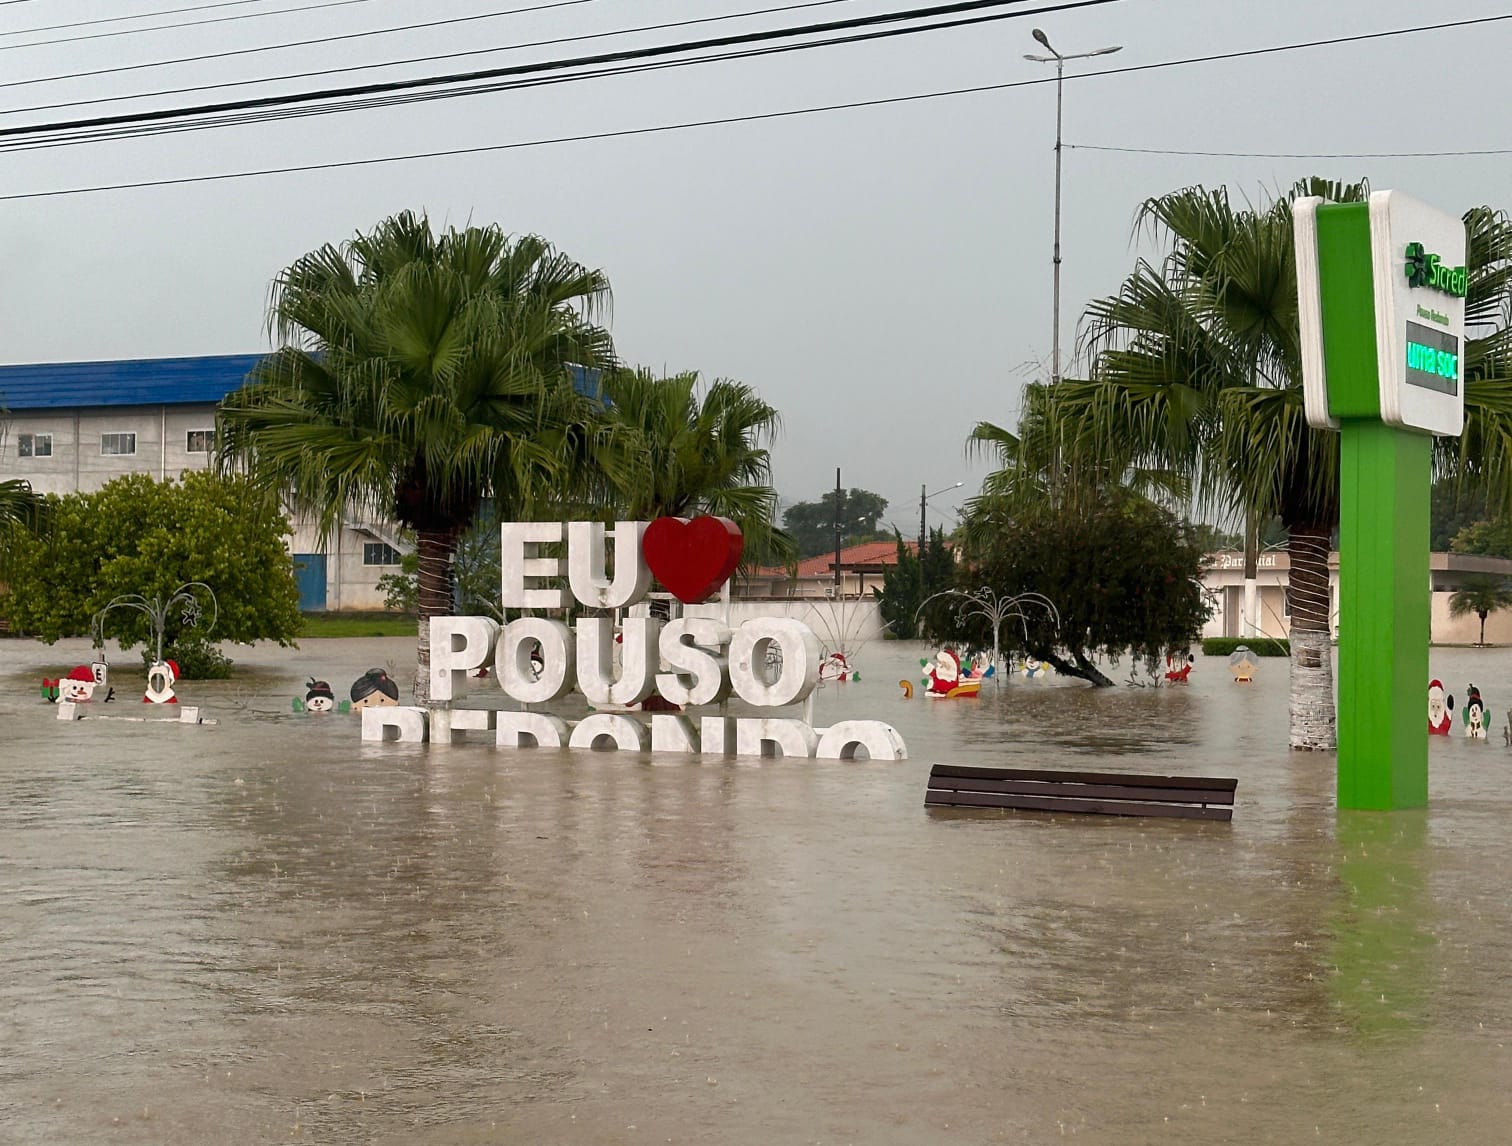 Trabalhadores atingidos pelas chuvas em Pouso Redondo já podem solicitar Saque Calamidade do FGTS